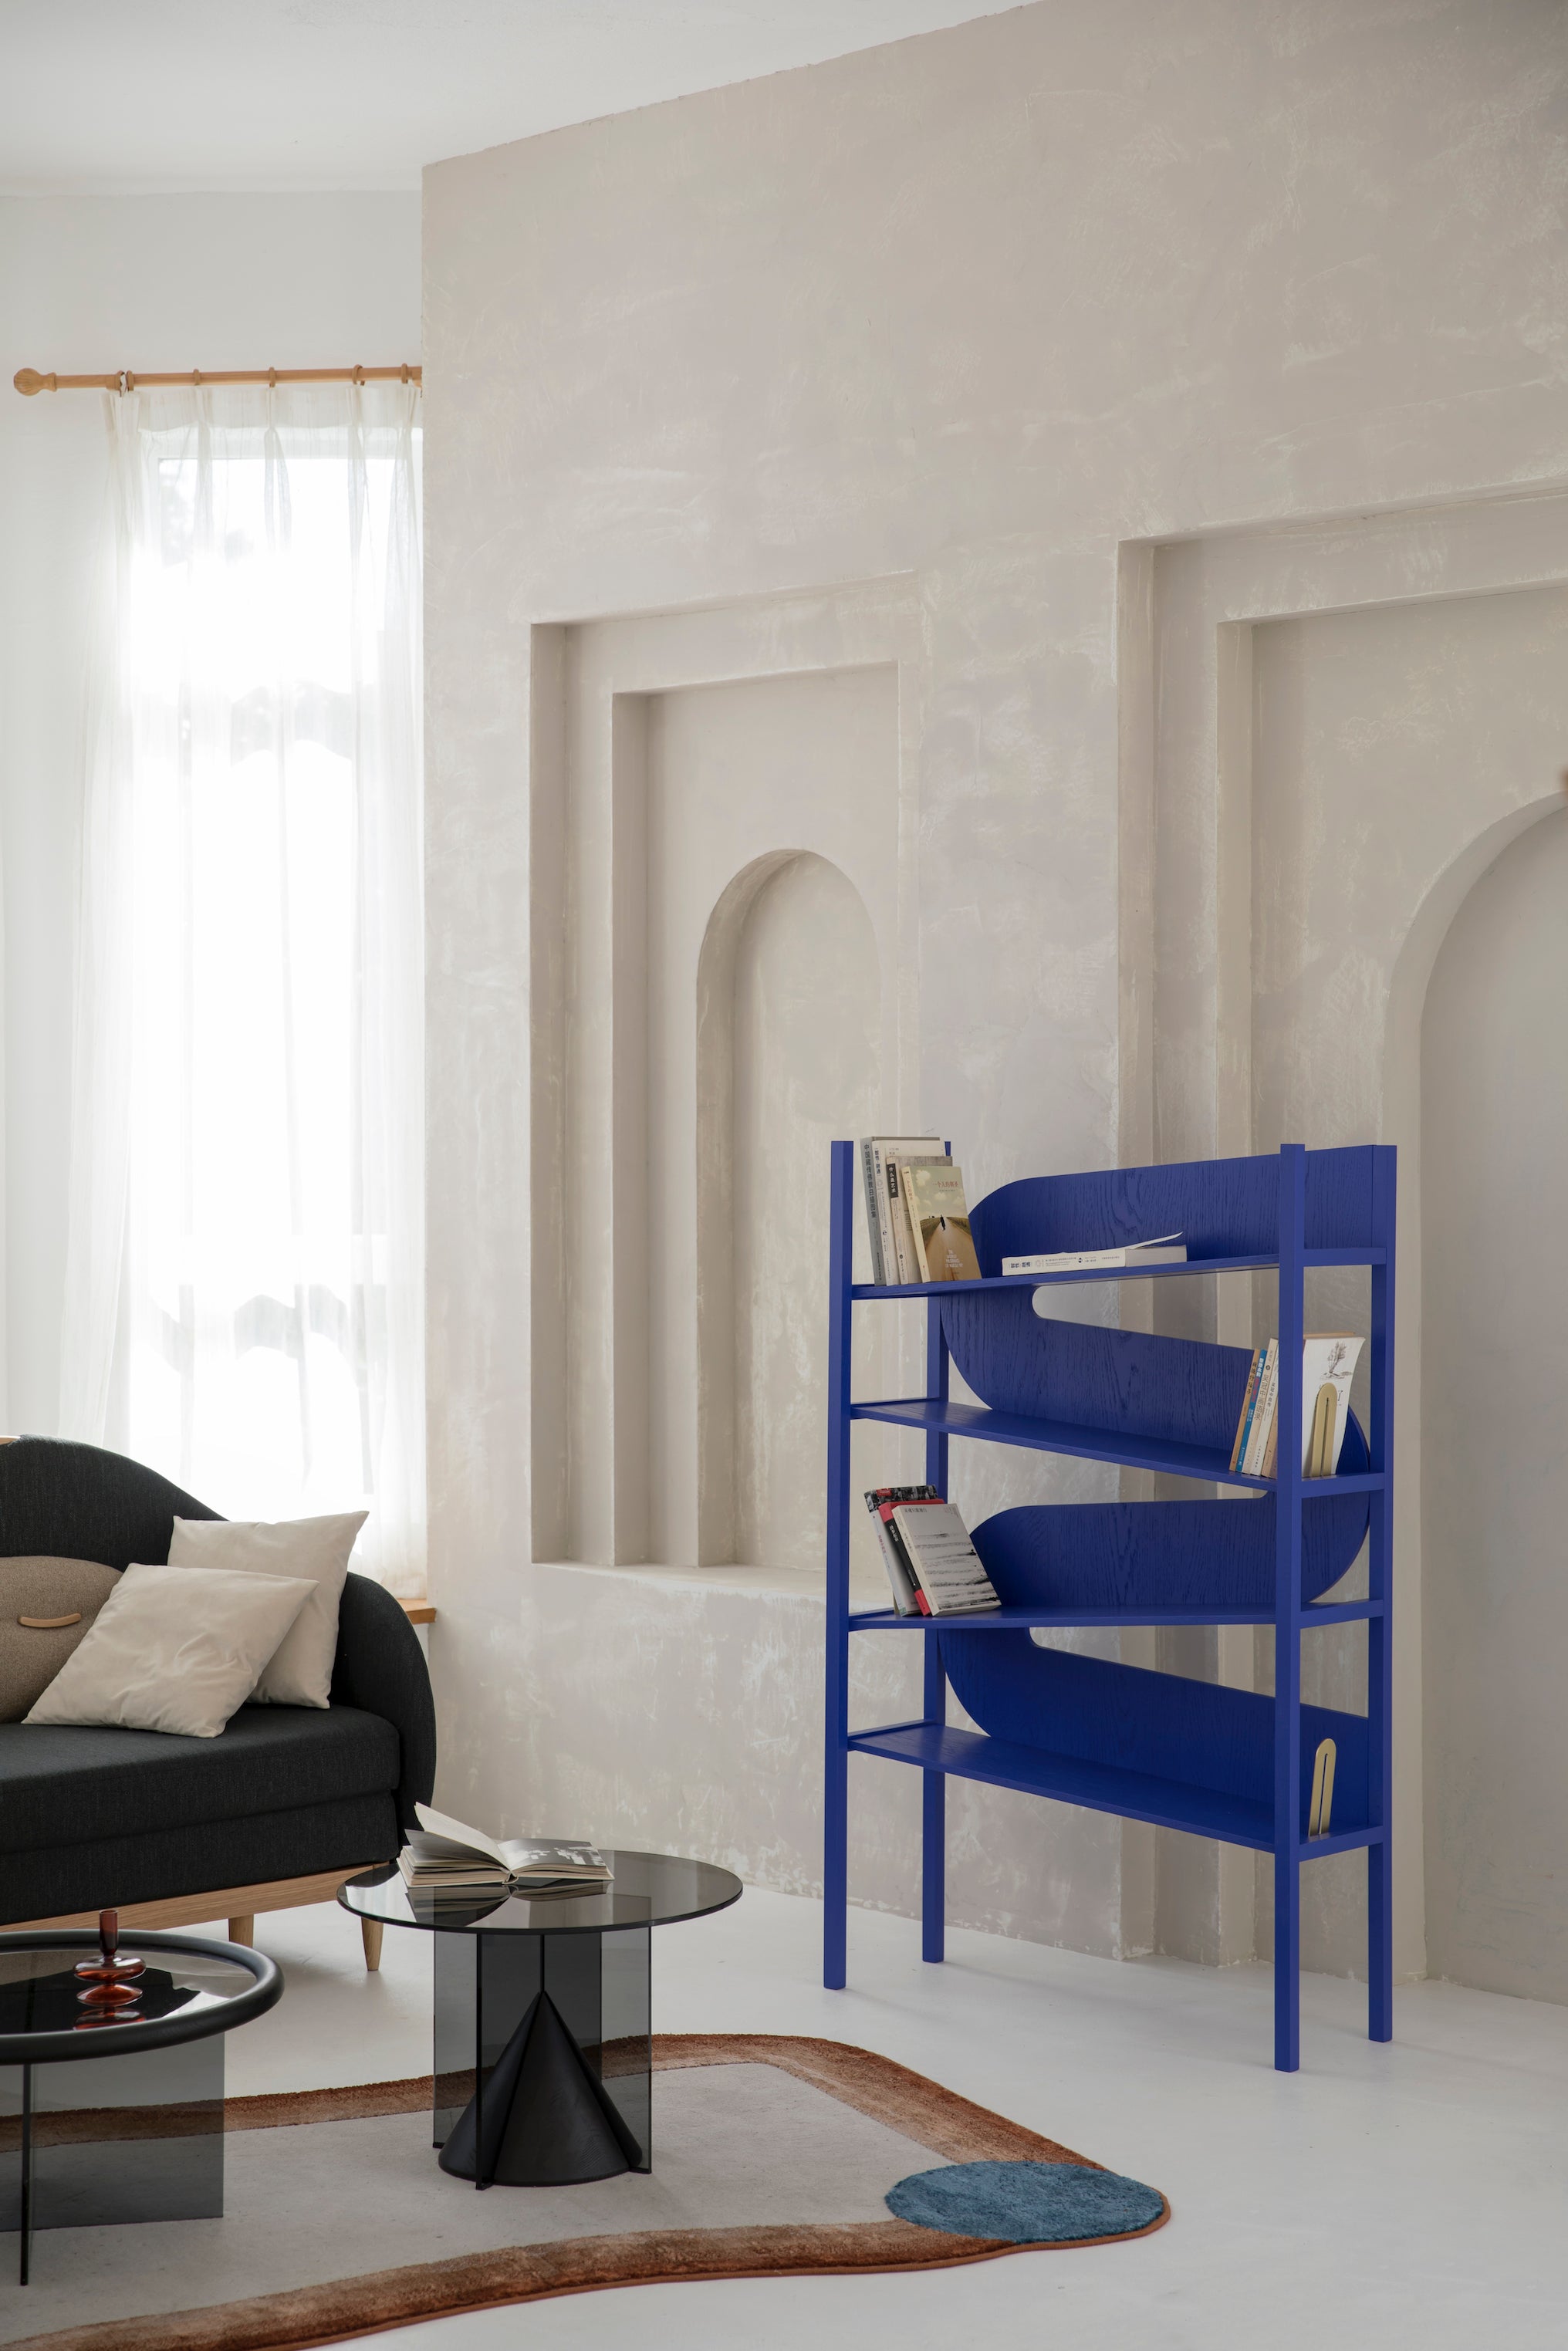 Arrangeable Bookshelf Bookcase / Cabinet ( Customer Made ) Ziinlife Modern Design Furniture Hong Kong 